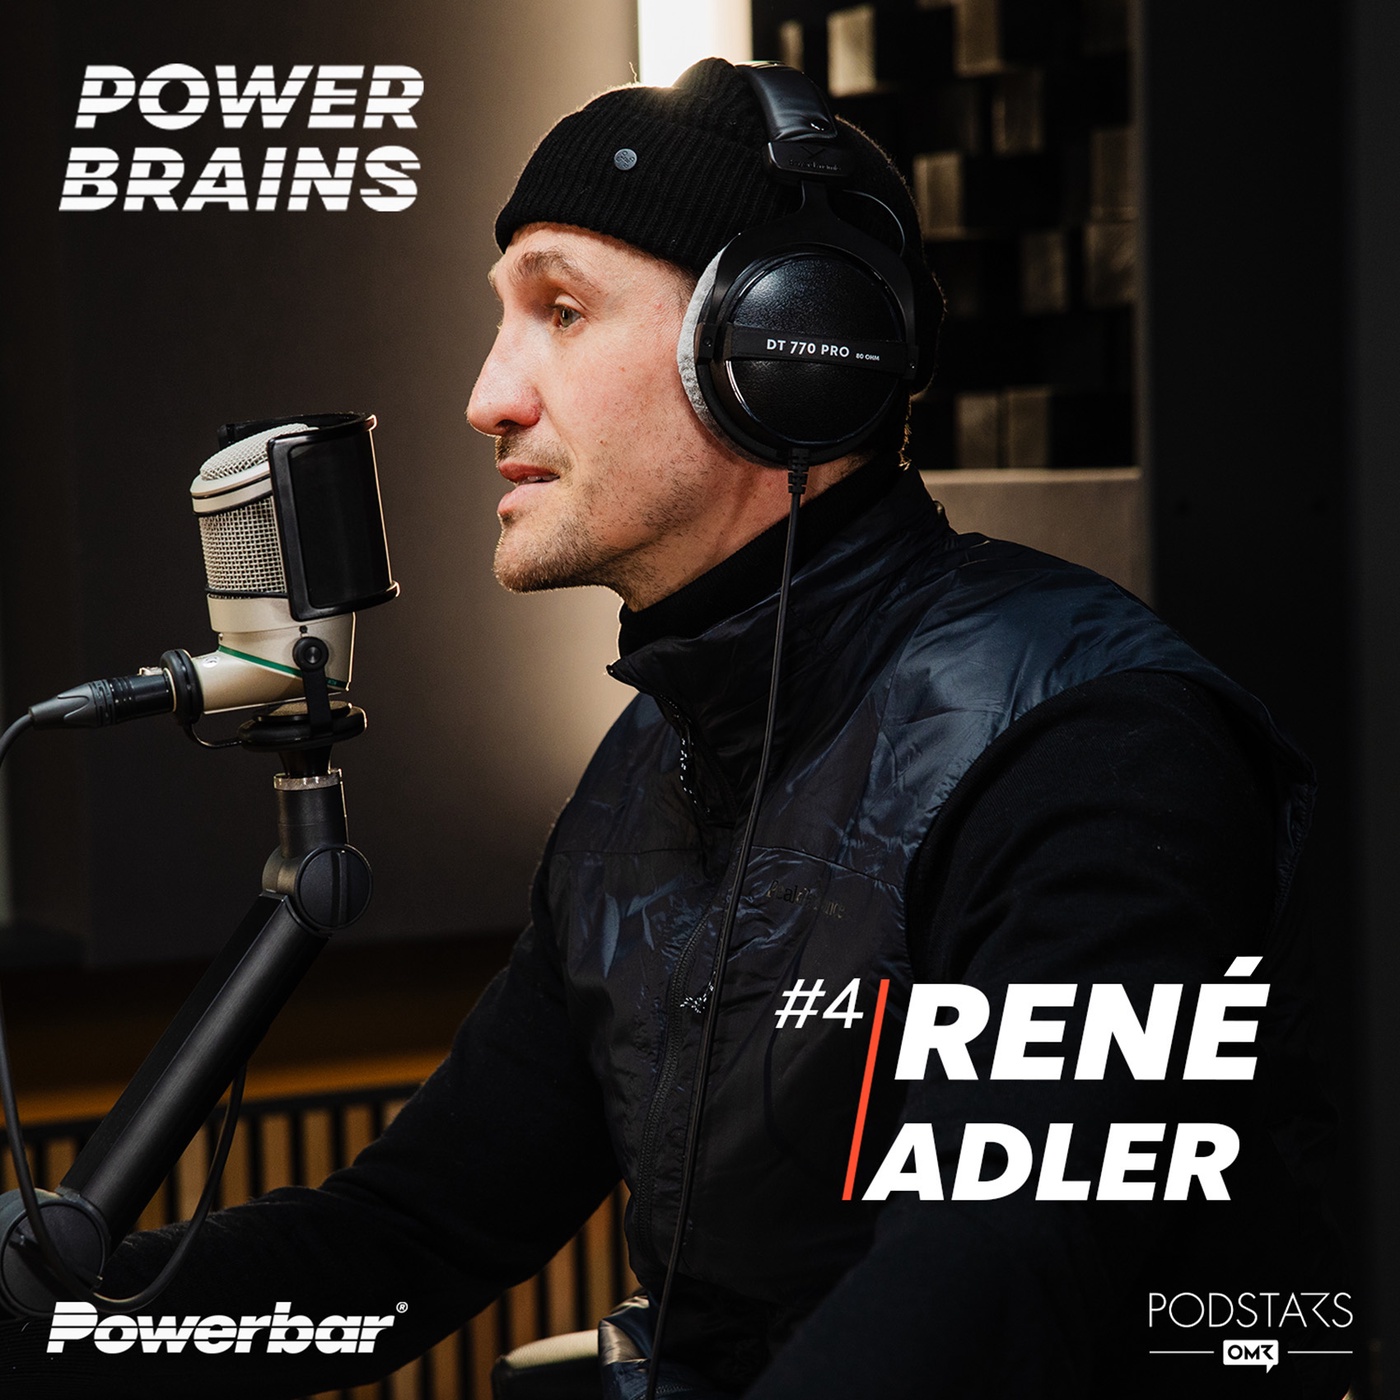 Leistungsdruck als Fußballer & Selbstfindung – mit René Adler